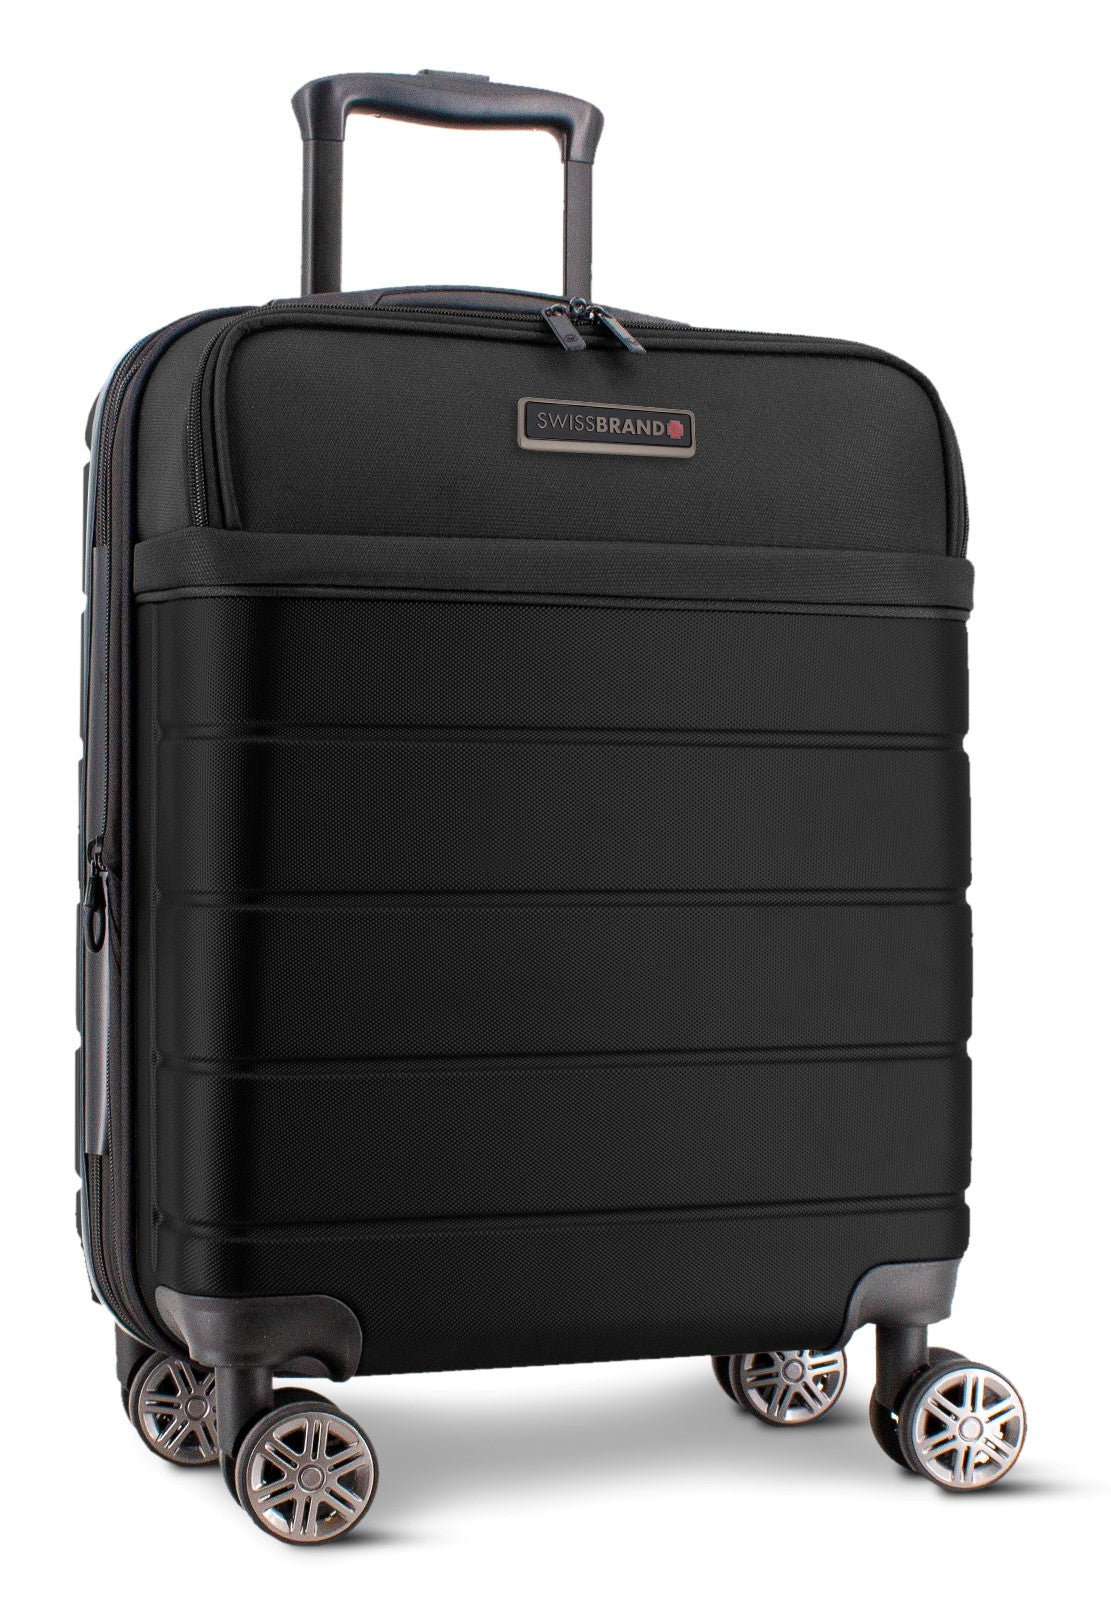 ✮מותג שוויצרי מקורי✮ מזוודה גדולה 28" יוקרתית בסגנון עסקי חצי קשיחה בשילוב בד  SwissBrand דגם AMSTERDAM